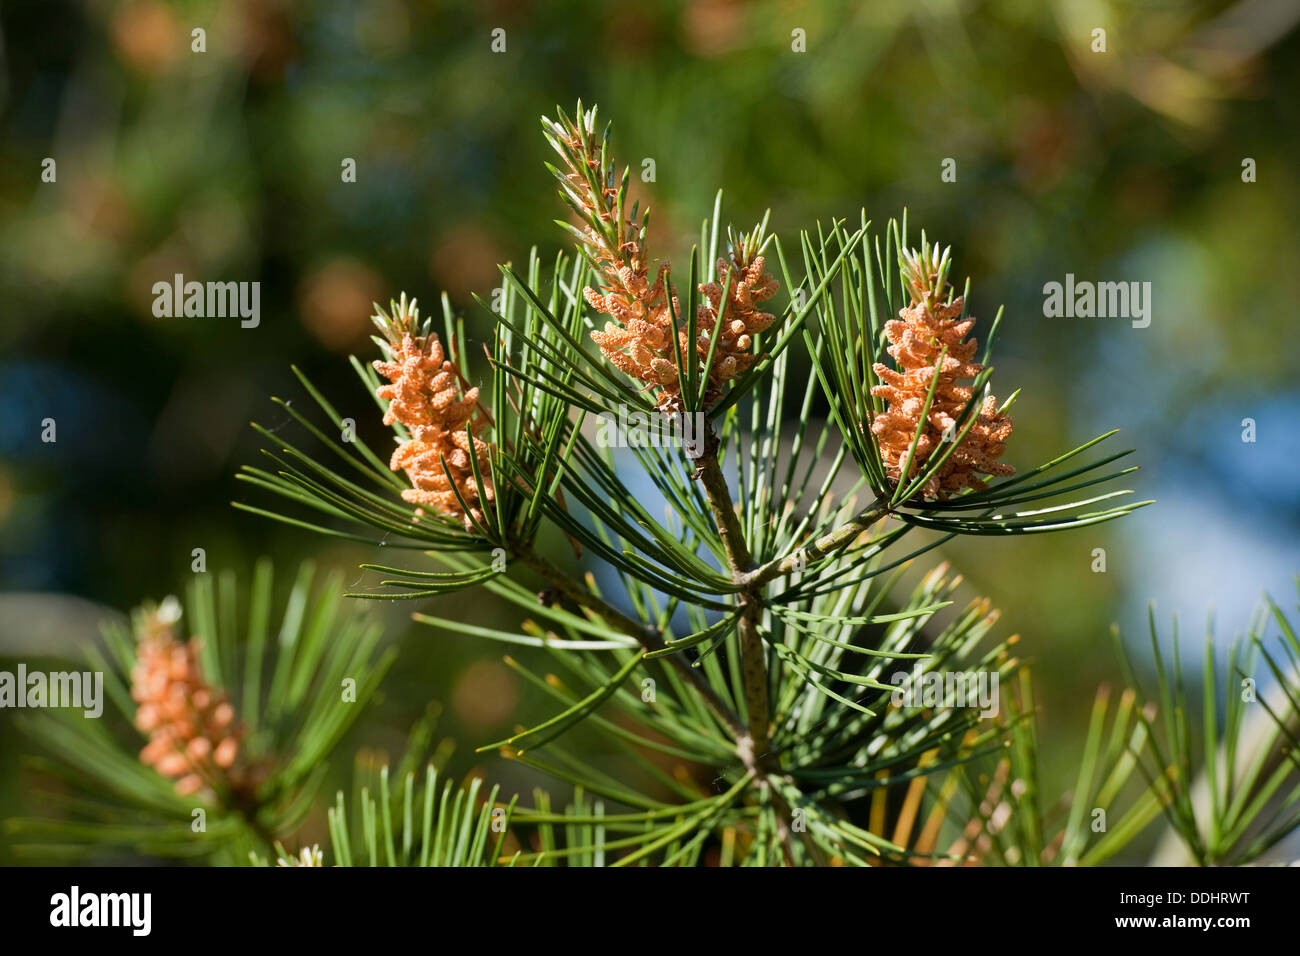 Bunge's Pine or Lacebark Pine (Pinus bungeana) Stock Photo